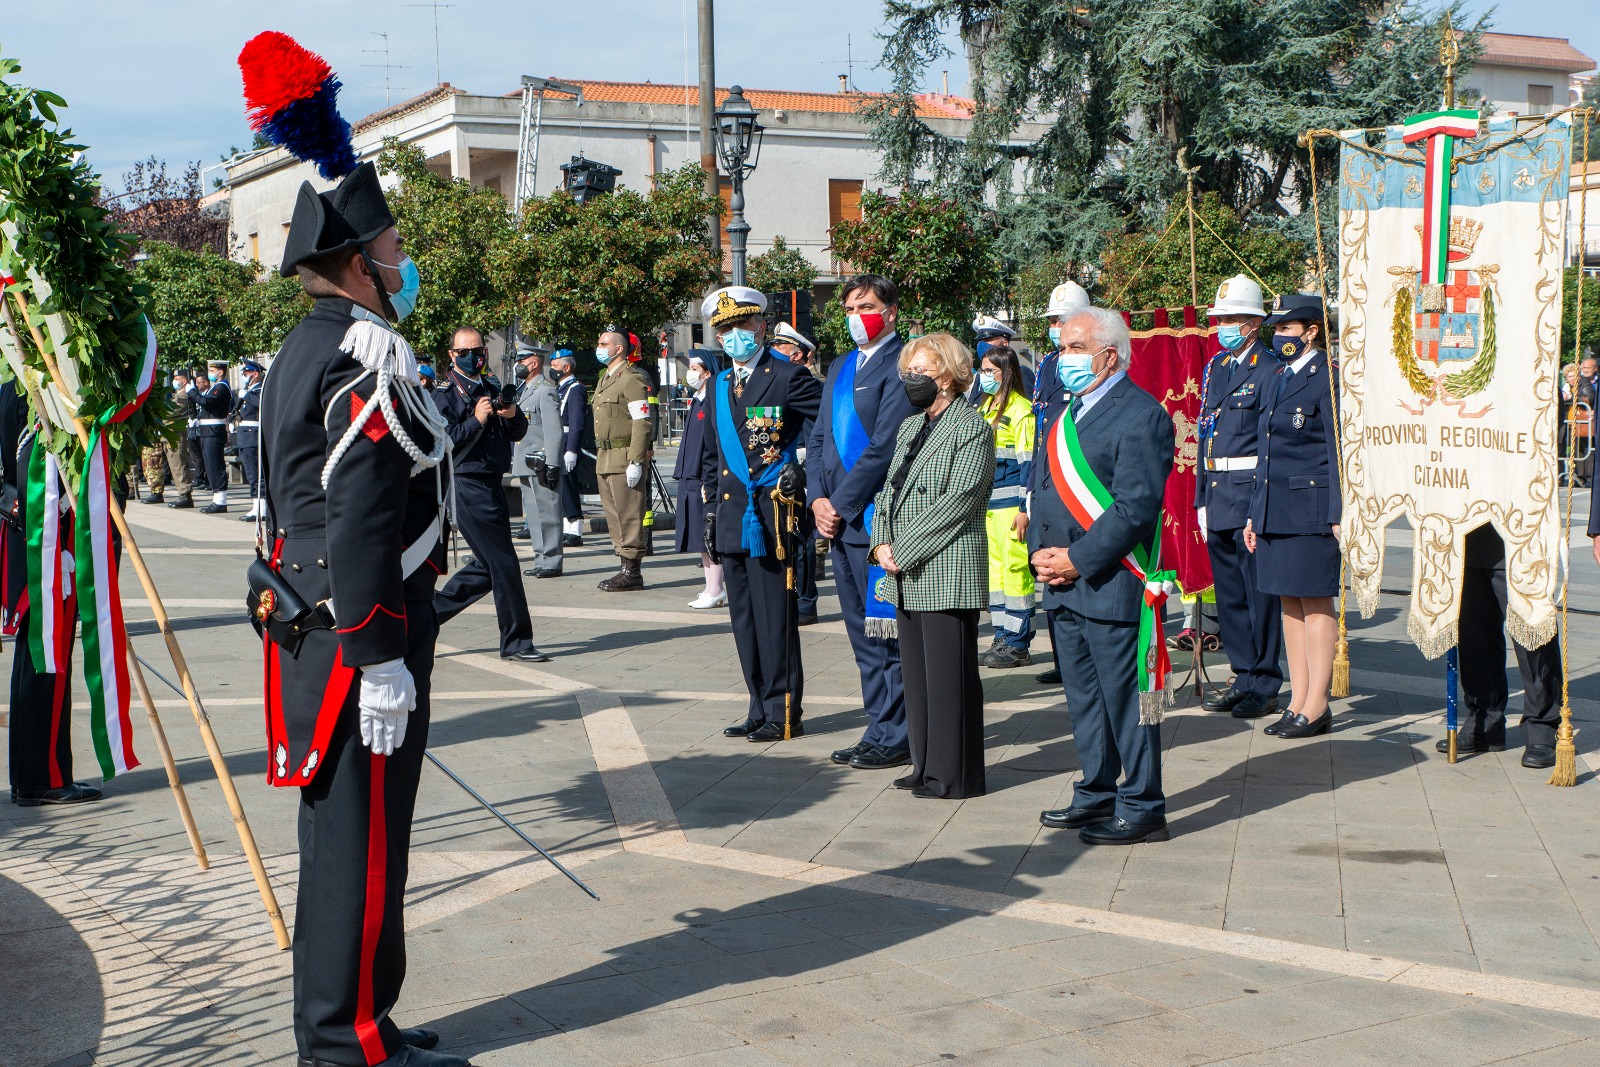 Celebrate l’Unità d’Italia e le Forze Armate a Catania e Trecastagni. Il prefetto: “La grandezza di una nazione si fonda su ideali di giustizia, libertà e pace”